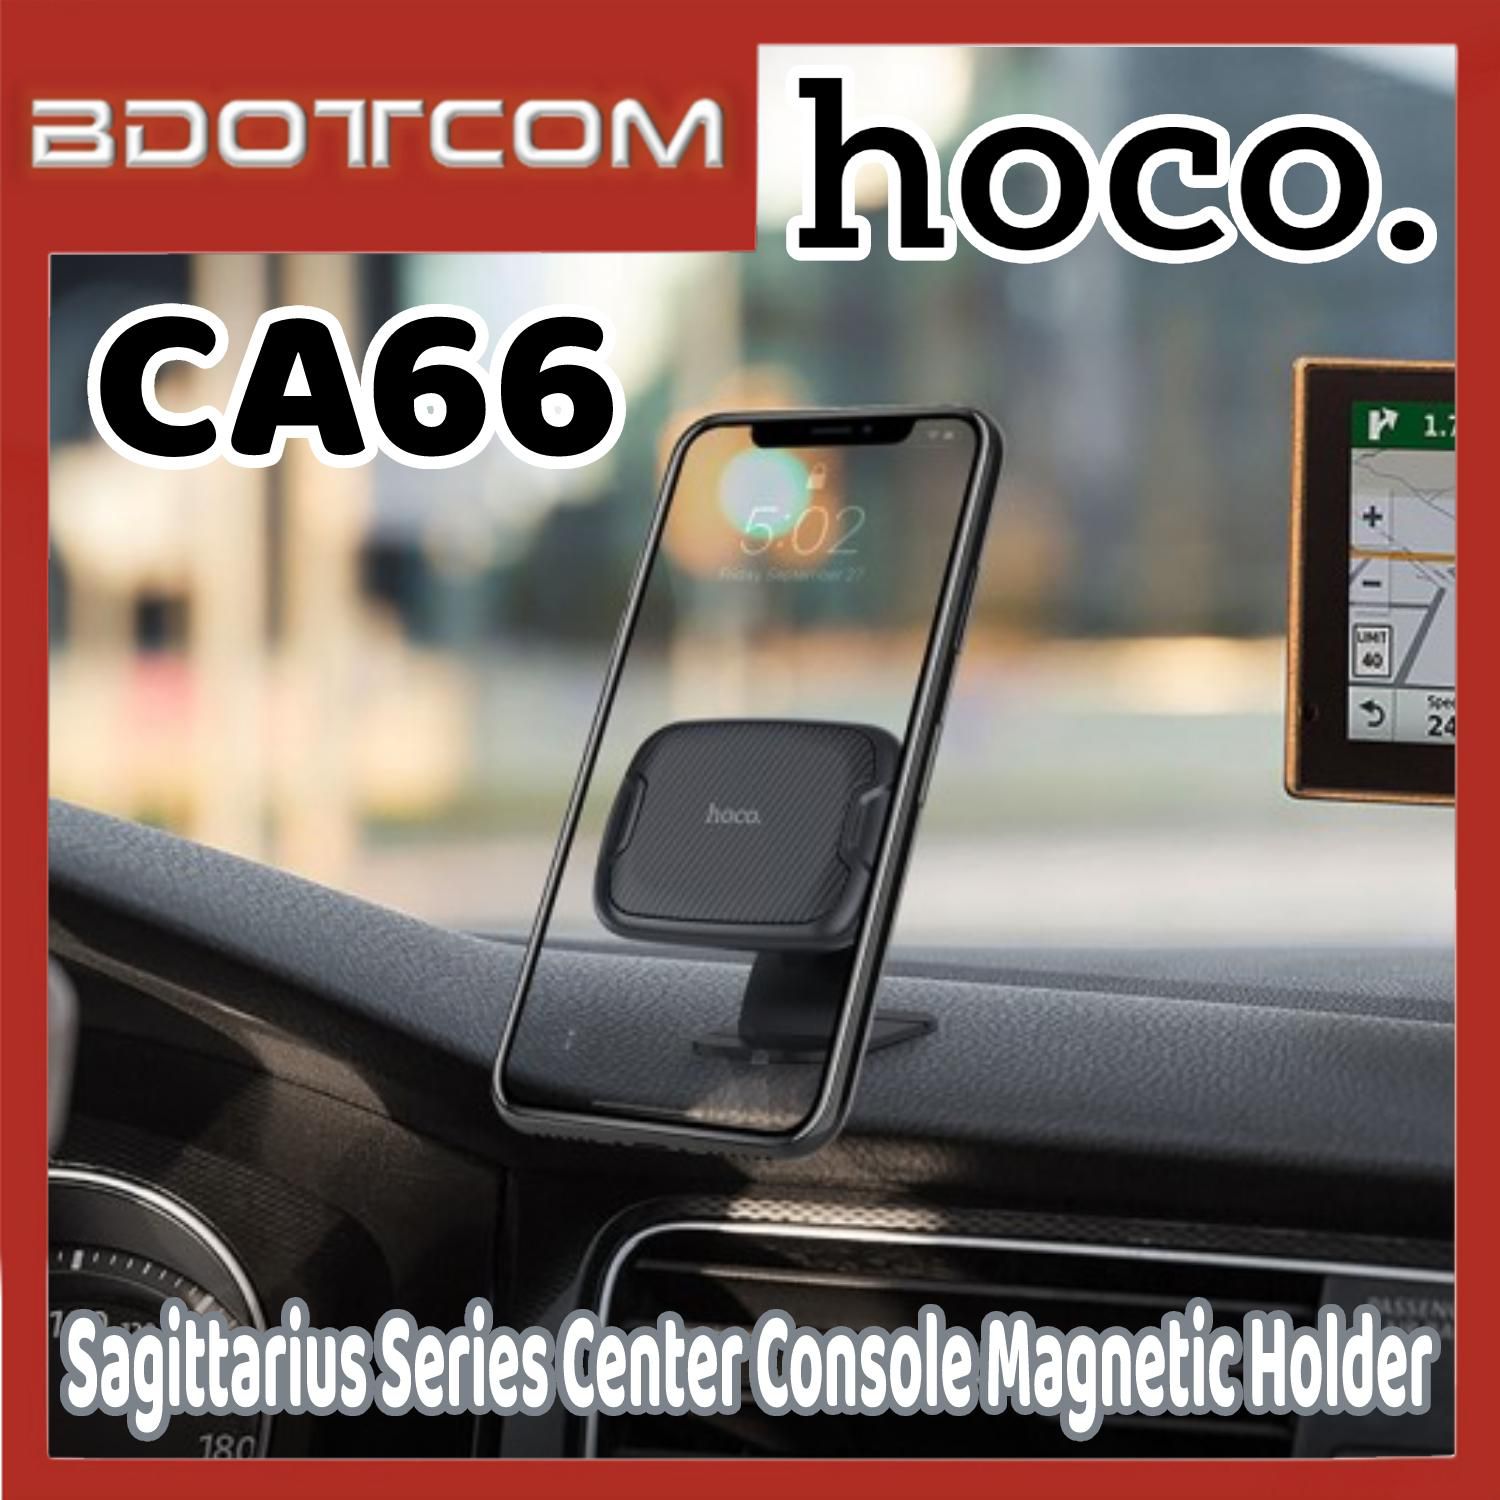 Hoco CA66 Sagittarius Series Center Console Magnetic Car Phone Holder